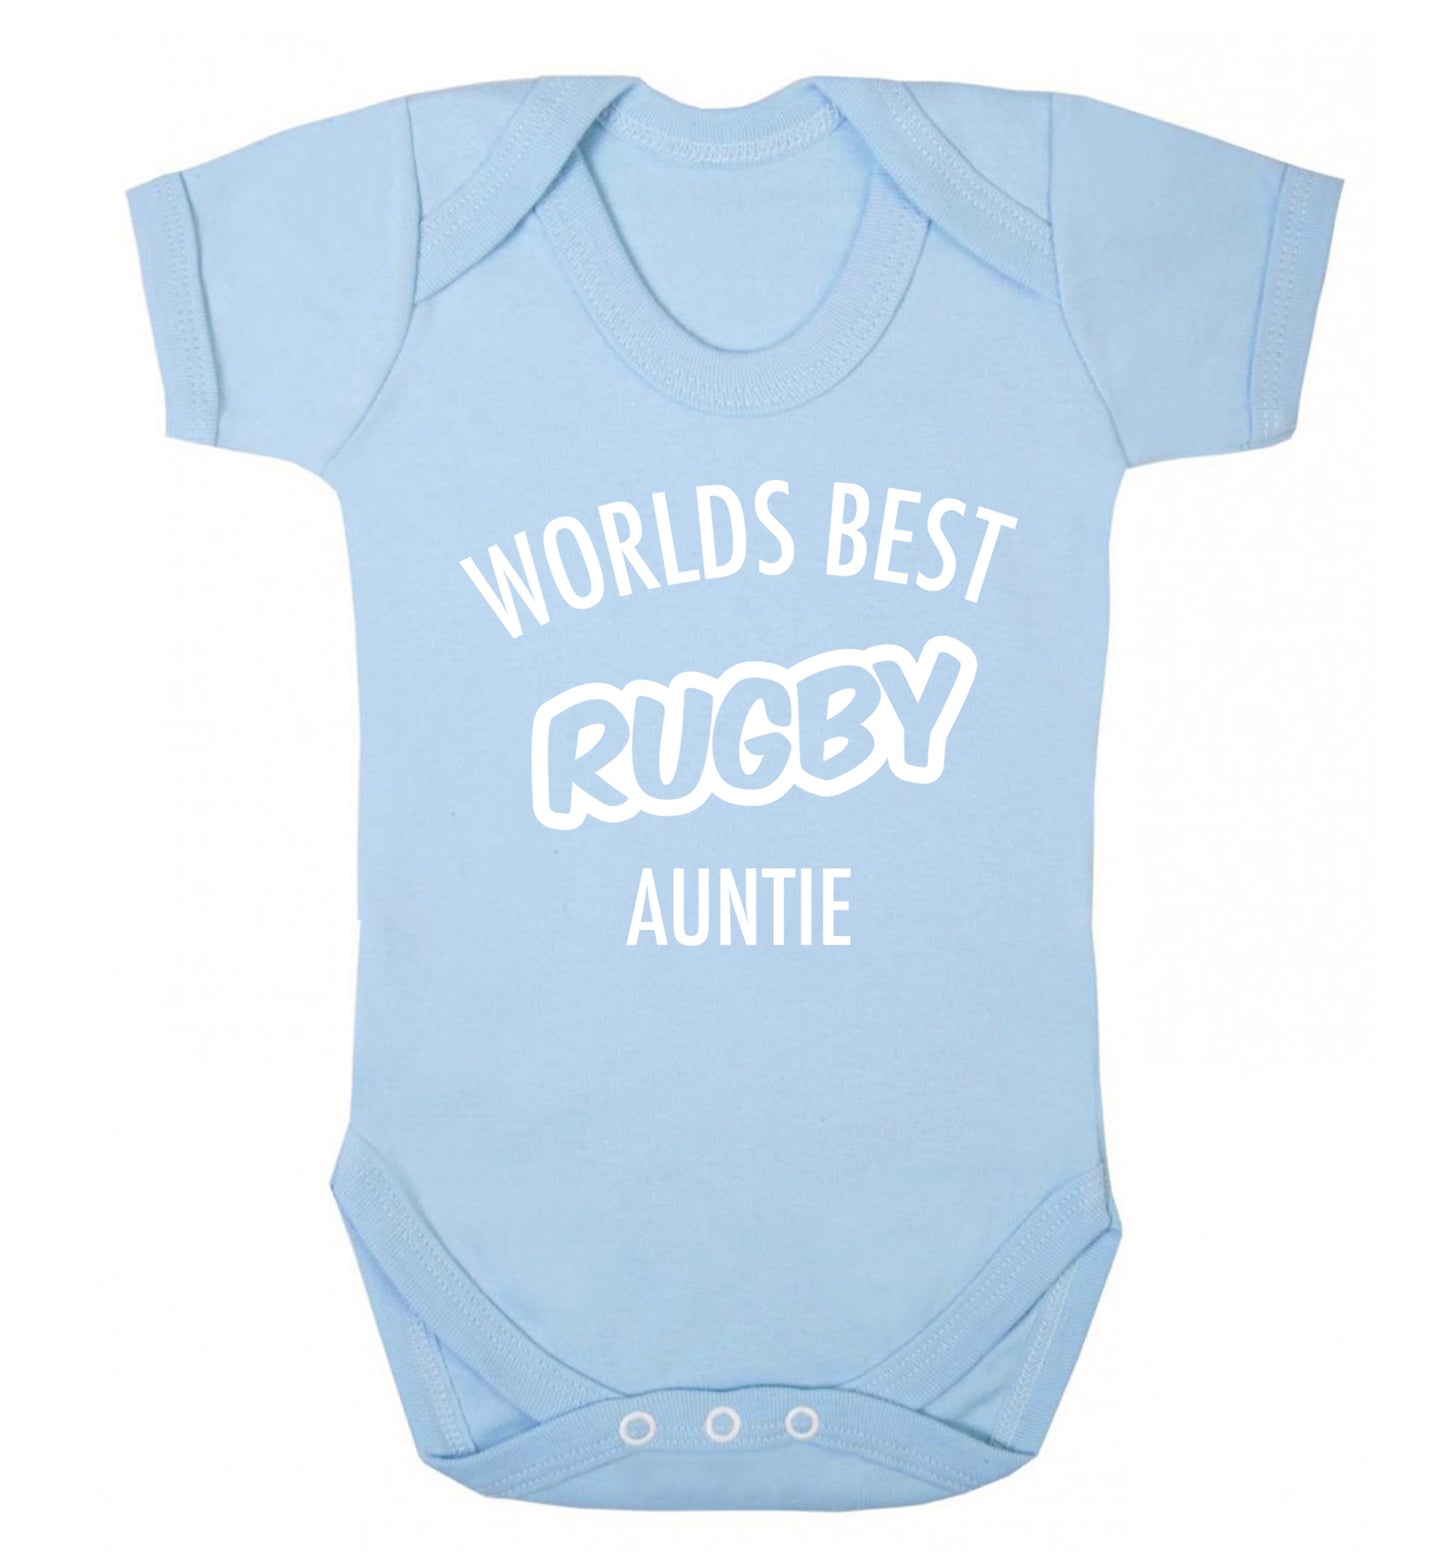 Worlds best rugby auntie Baby Vest pale blue 18-24 months